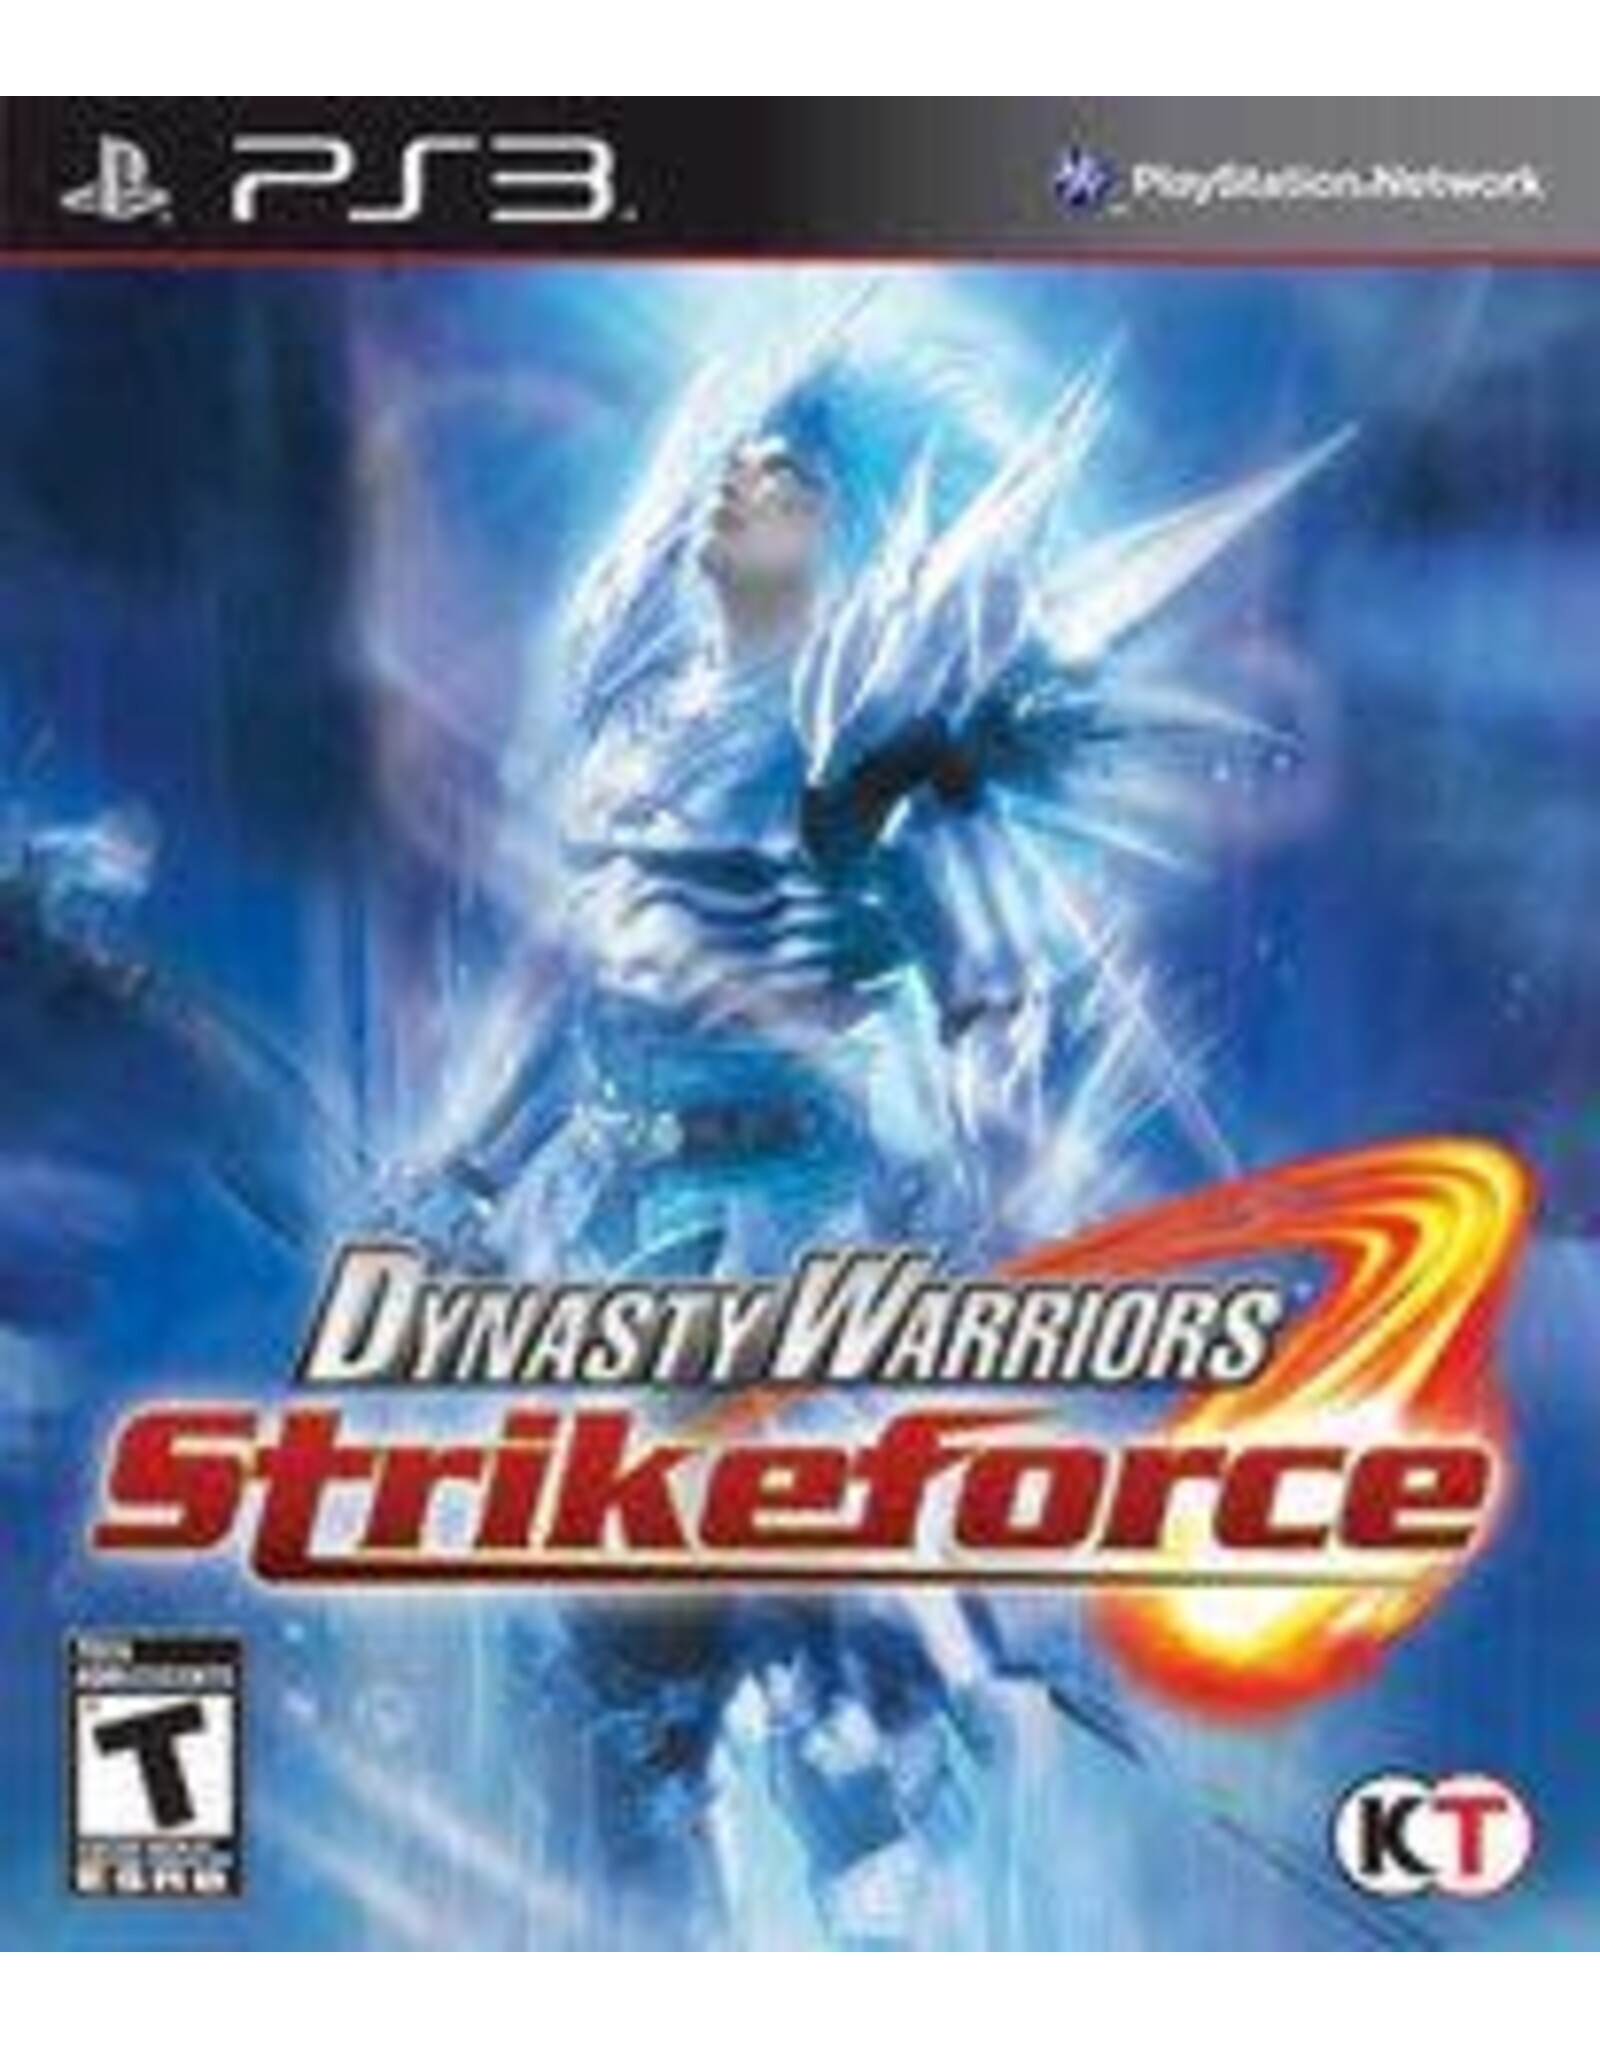 Playstation 3 Dynasty Warriors: Strikeforce (CiB)